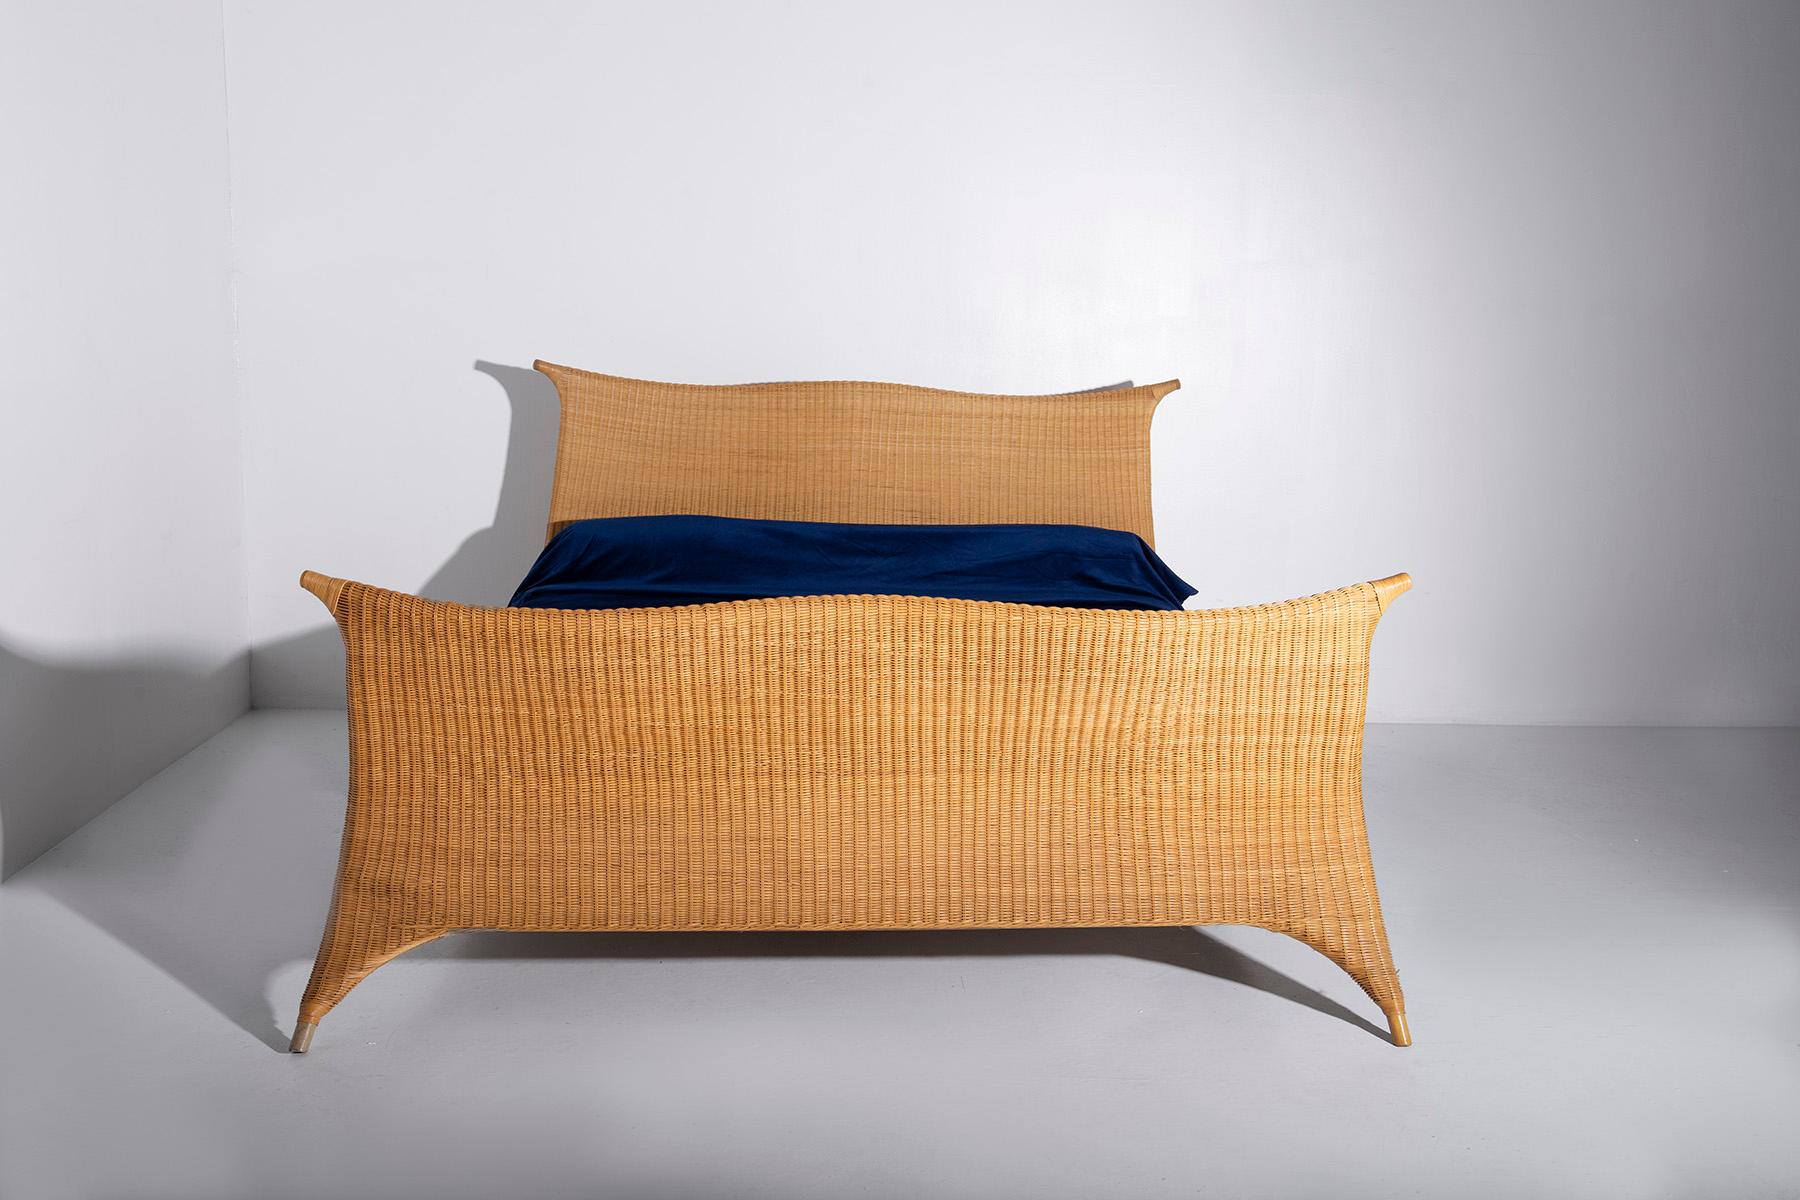 Modern Italian rattan bed by PierAntonio Bonacina, with label